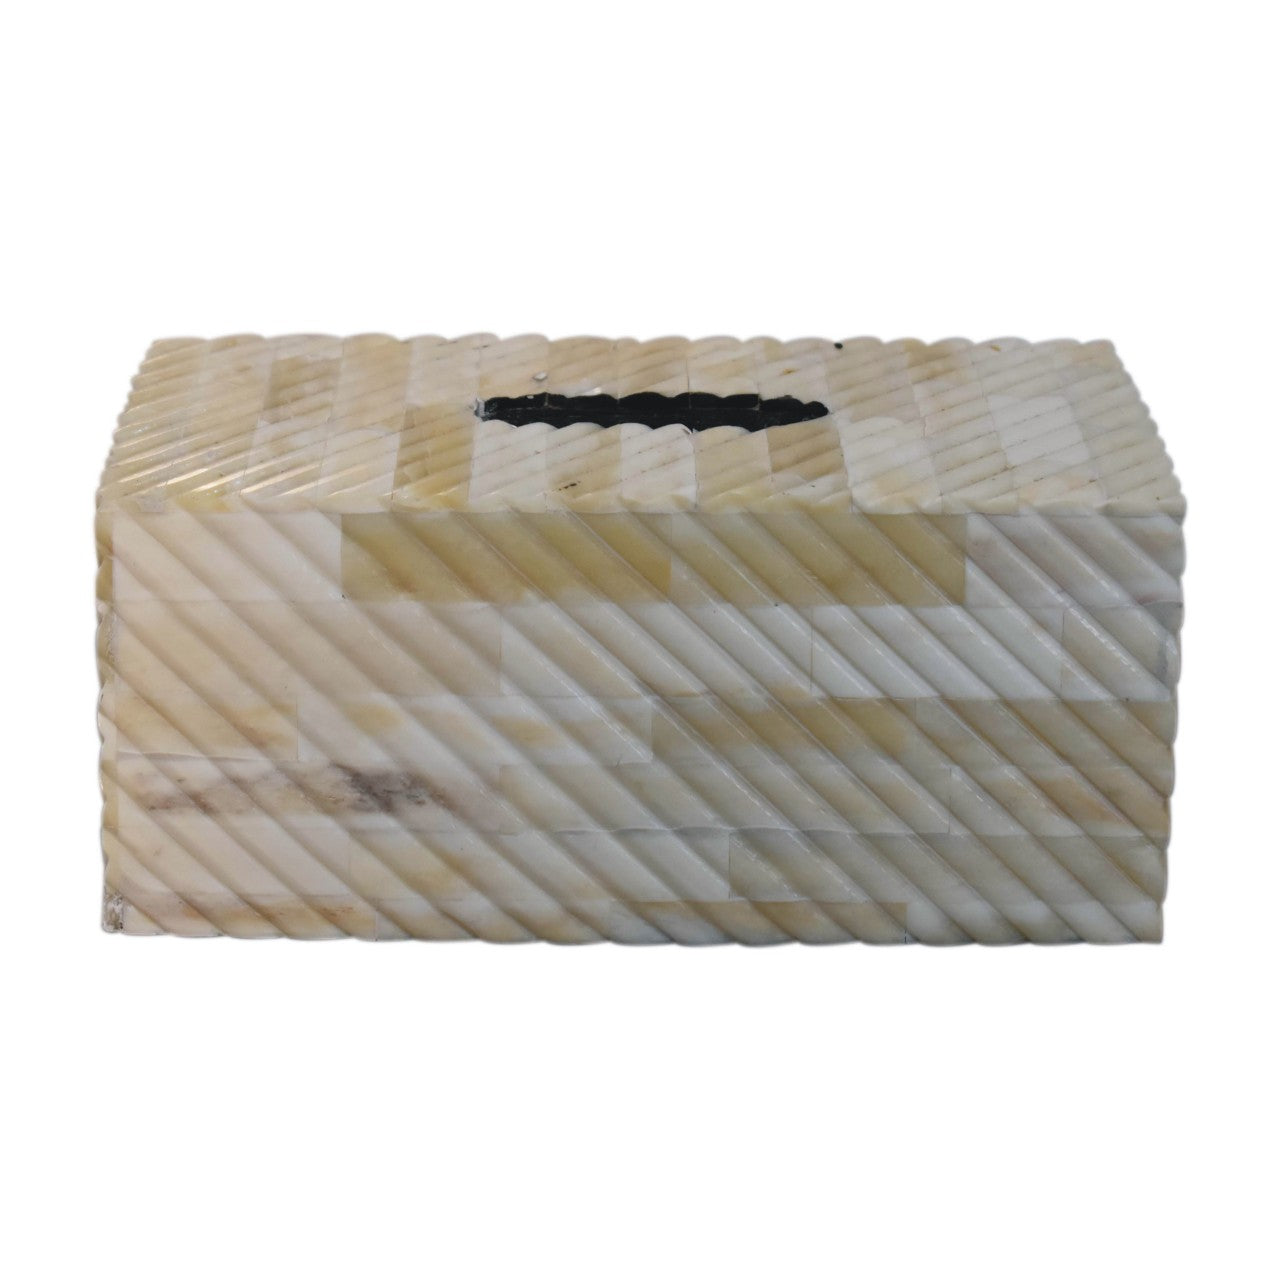 View Bone Inlay Tissue Box information